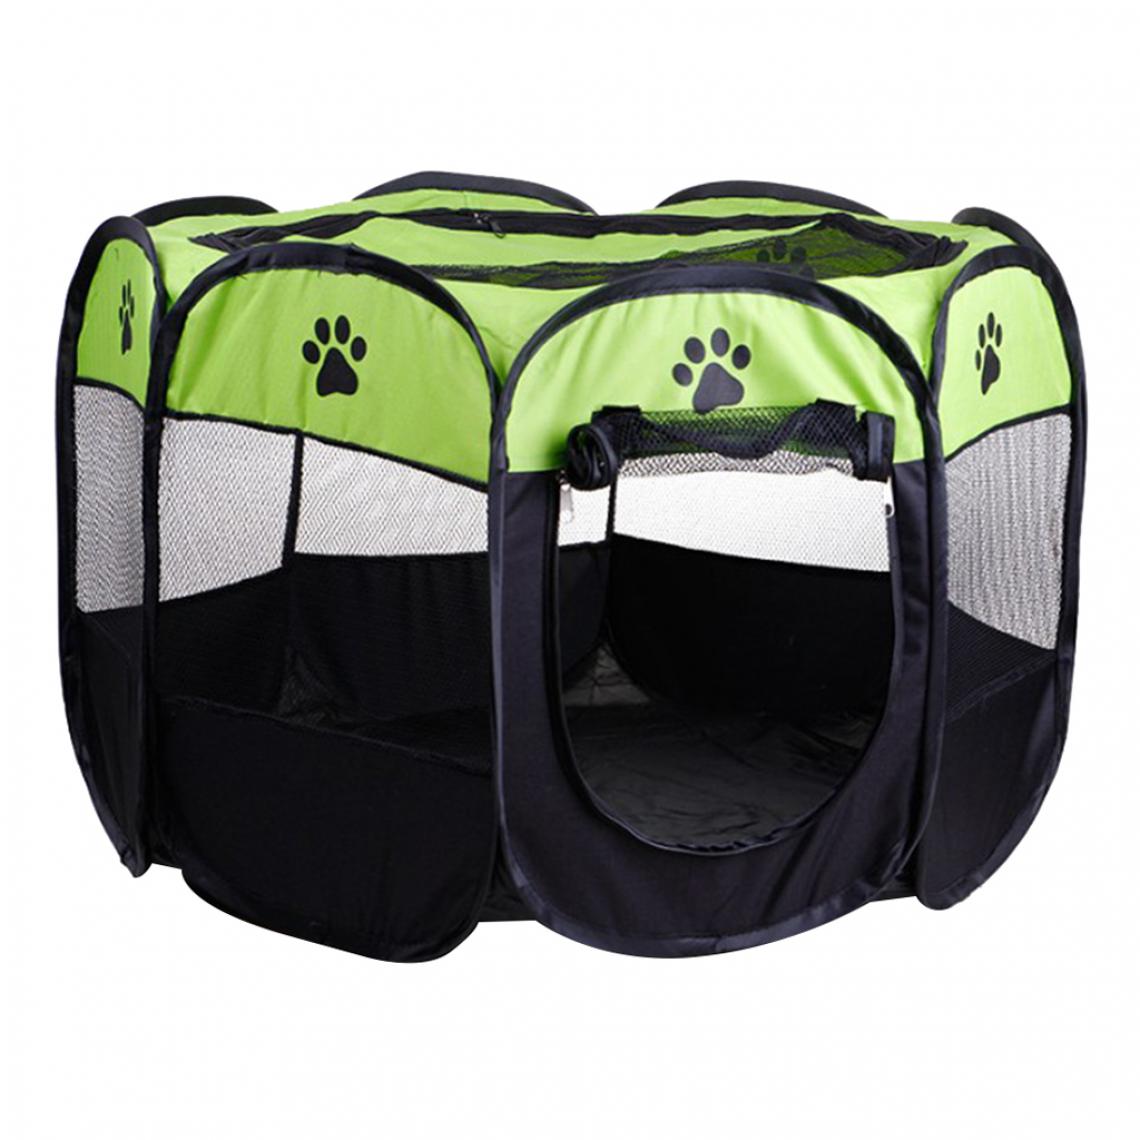 marque generique - Parc Pliable Pour Animaux De Compagnie Portable 8-Panel Kennel Fences Tent Green_S - Clôture pour chien